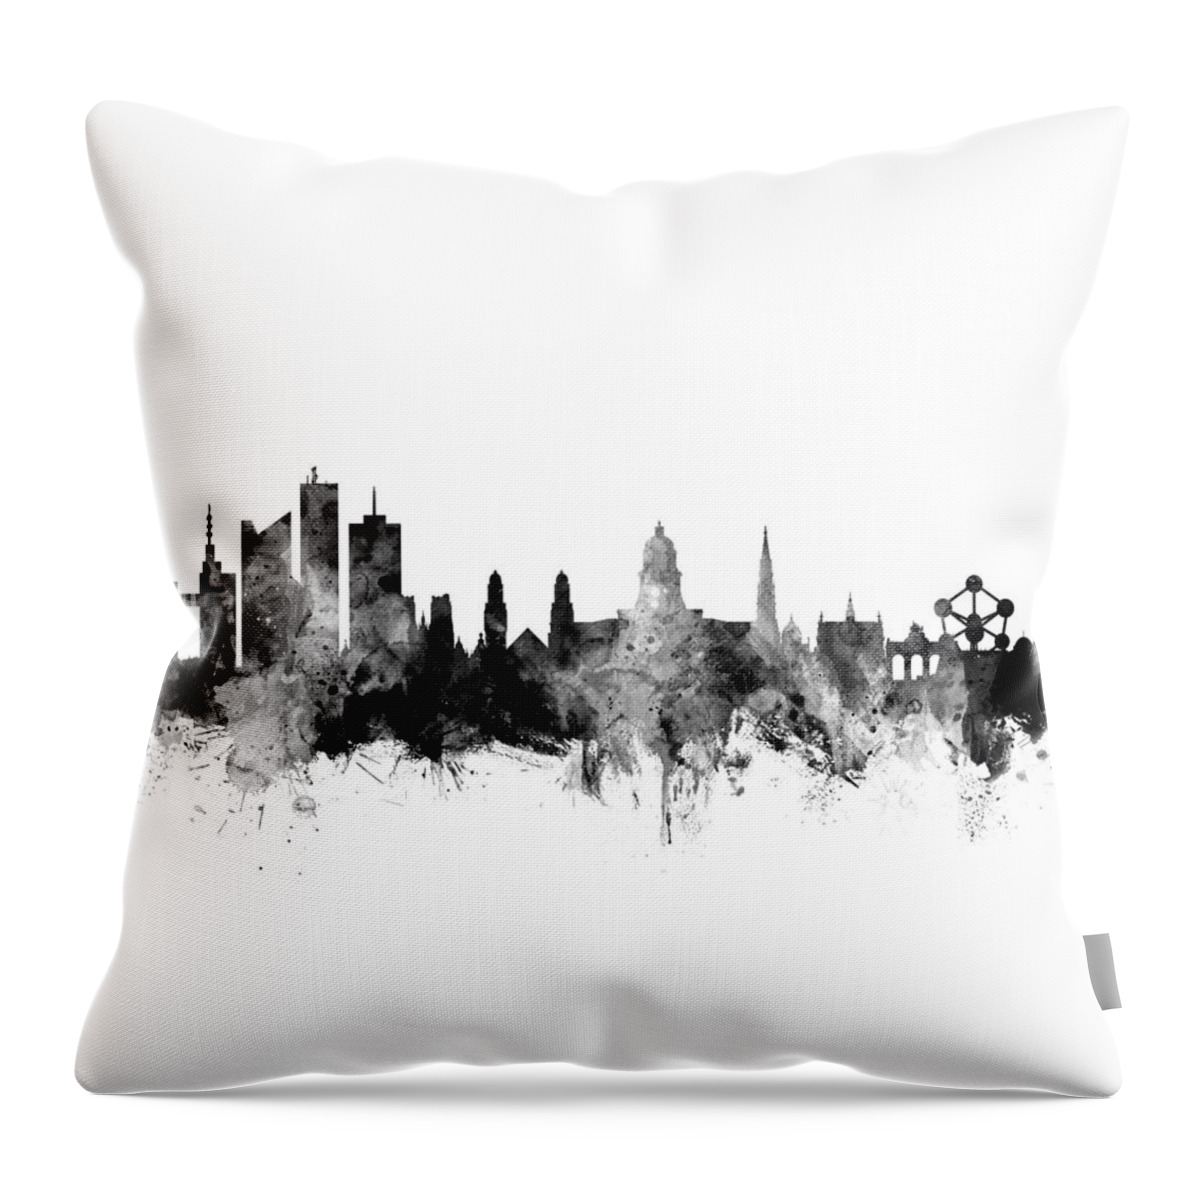 Brussels Throw Pillow featuring the digital art Brussels Belgium Skyline by Michael Tompsett